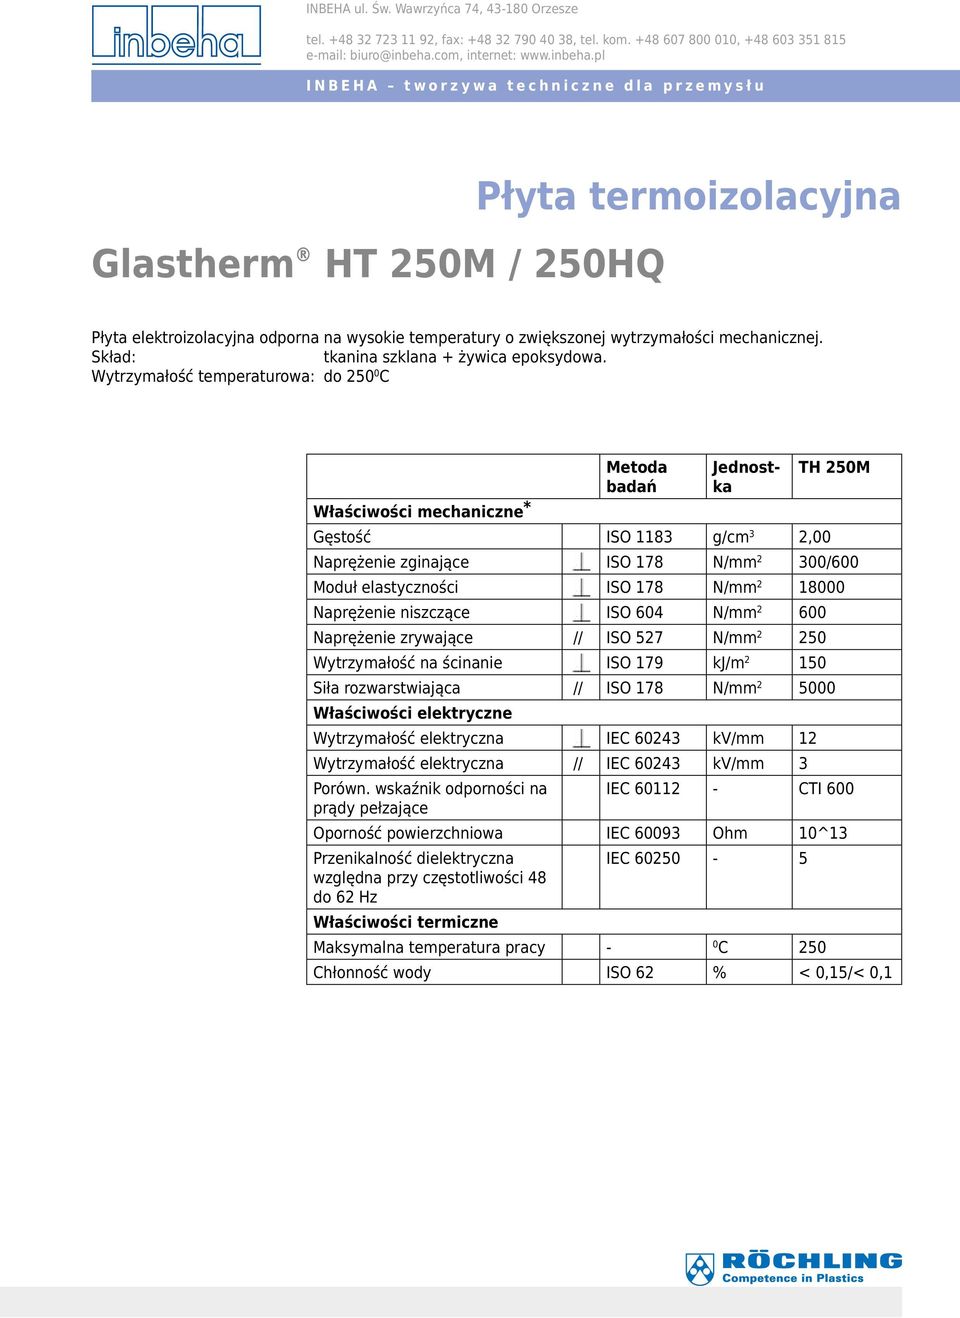 ISO 604 N/mm 2 600 Naprężenie zrywające // ISO 527 N/mm 2 250 Wytrzymałość na ścinanie ISO 179 kj/m 2 150 Siła rozwarstwiająca // ISO 178 N/mm 2 5000 Właściwości elektryczne Wytrzymałość elektryczna